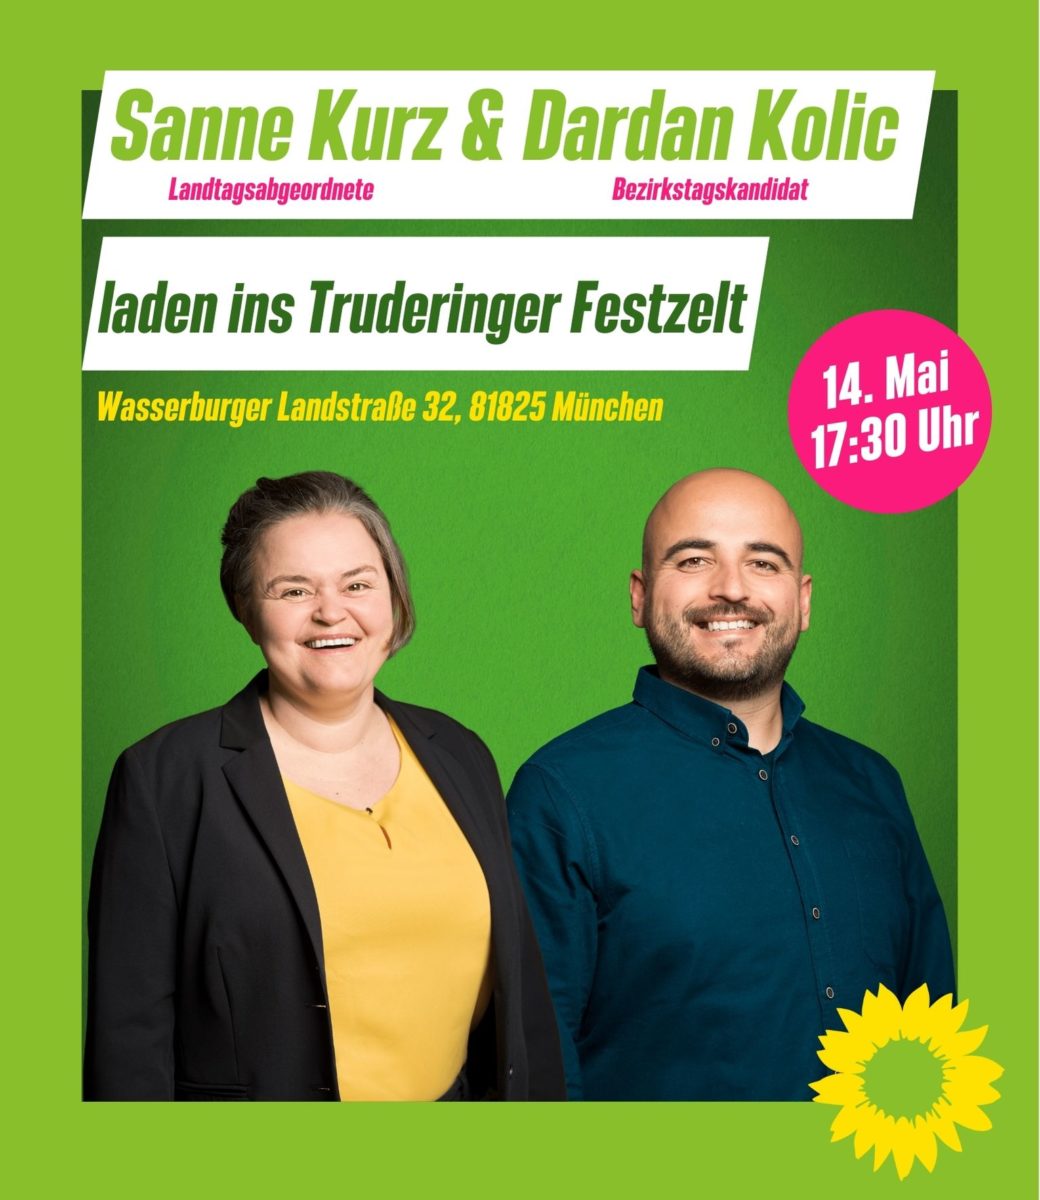 Flyer Frontseite: es sind die Landtagsabgeordnete Sanne Kurz und der Bezirkstagskandidat Dardan Kolic zu sehen, sowie das Logo der Grünen, eine gelbe Sonnenblume. Der Text lautet: Sanne Kurz und Dardan Kolic laden ins Truderinger Festzelt am 14. Mai, 17:30 Uhr.